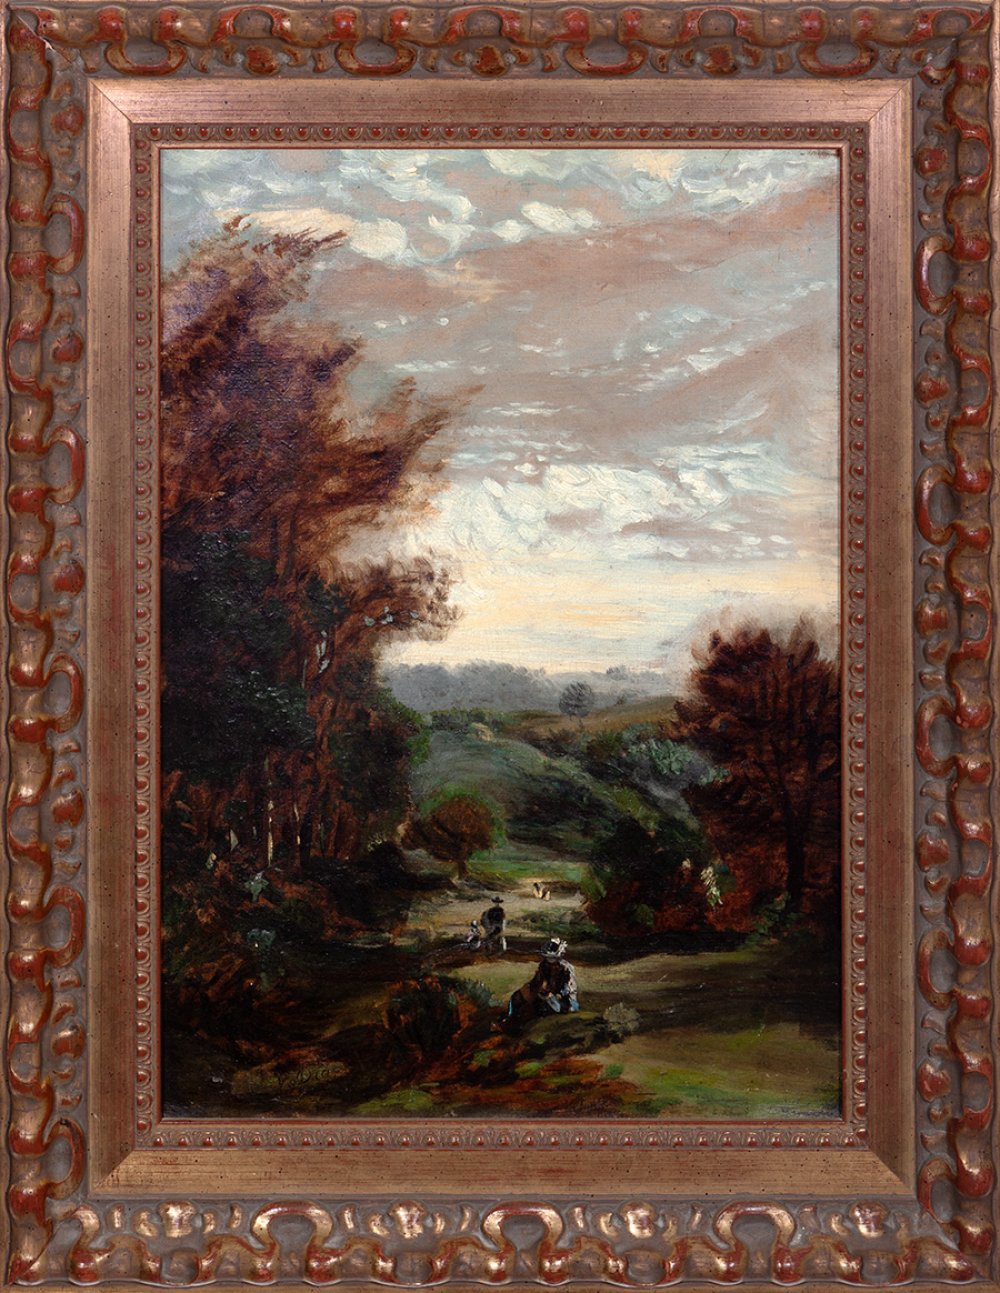 NARCISSE-VIRGILE DÍAZ DE LA PEÑA (Bordeaux, 1808- Menton, 1876)."Romantic landscape".Oil on canvas. - Image 3 of 5